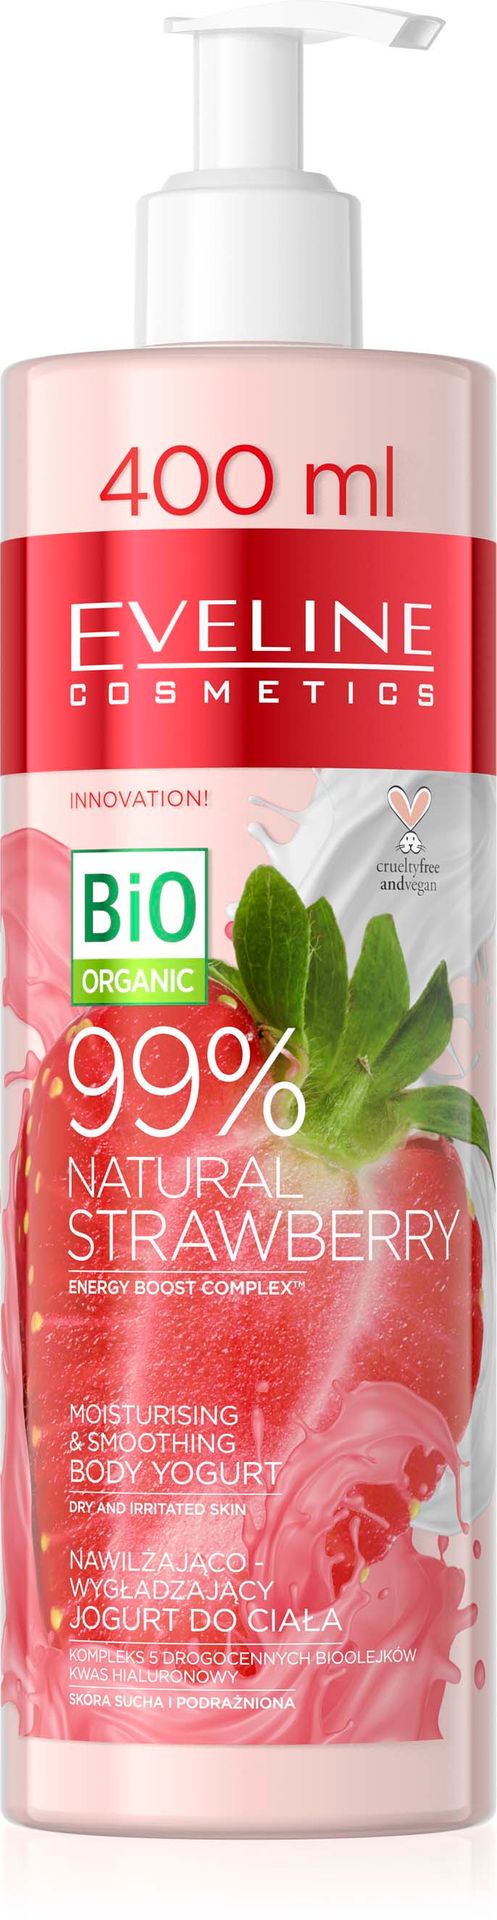 Eveline Cosmetics Cosmetics Pielęgnacja ciała 99% Natural Strawberry Nawilżająco wygładzający jogurt do ciała 400 ml